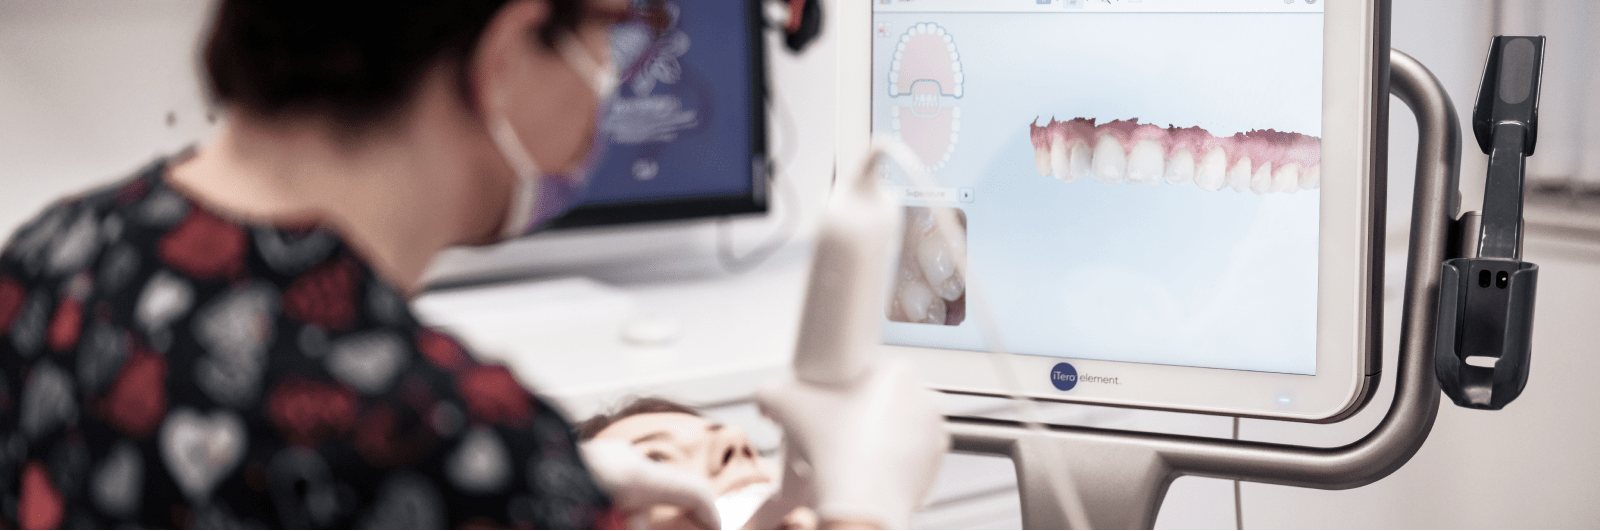 Technologies de pointe au Cabinet dentaire InnovaDent à Aix-les-Bains